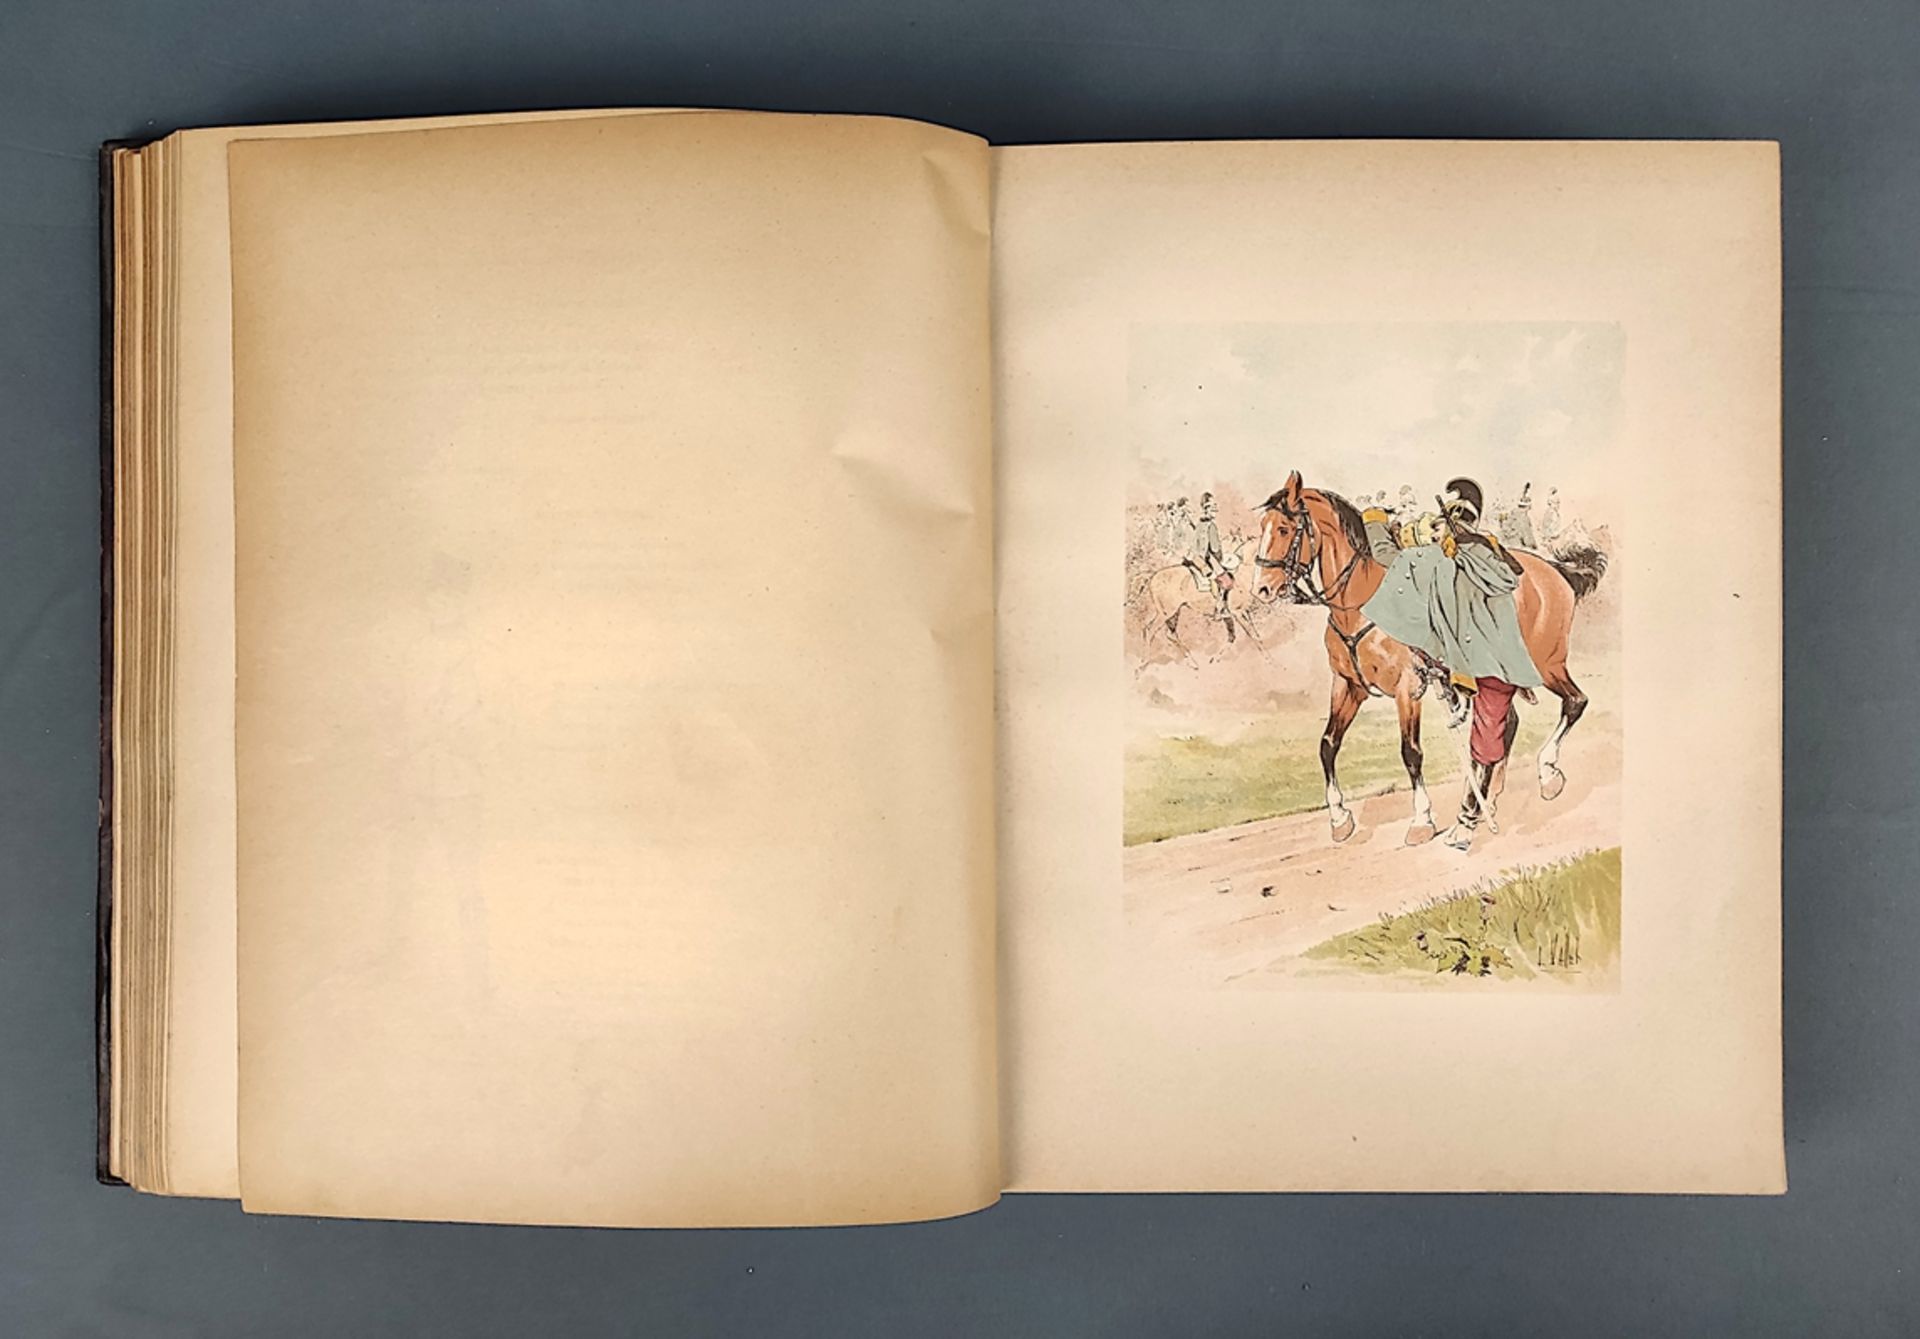 Book, Vallet, L. "A travers l'Europe. Croquis de cavalerie", Paris 1893, Libraire de Firmin-Didot e - Image 7 of 7